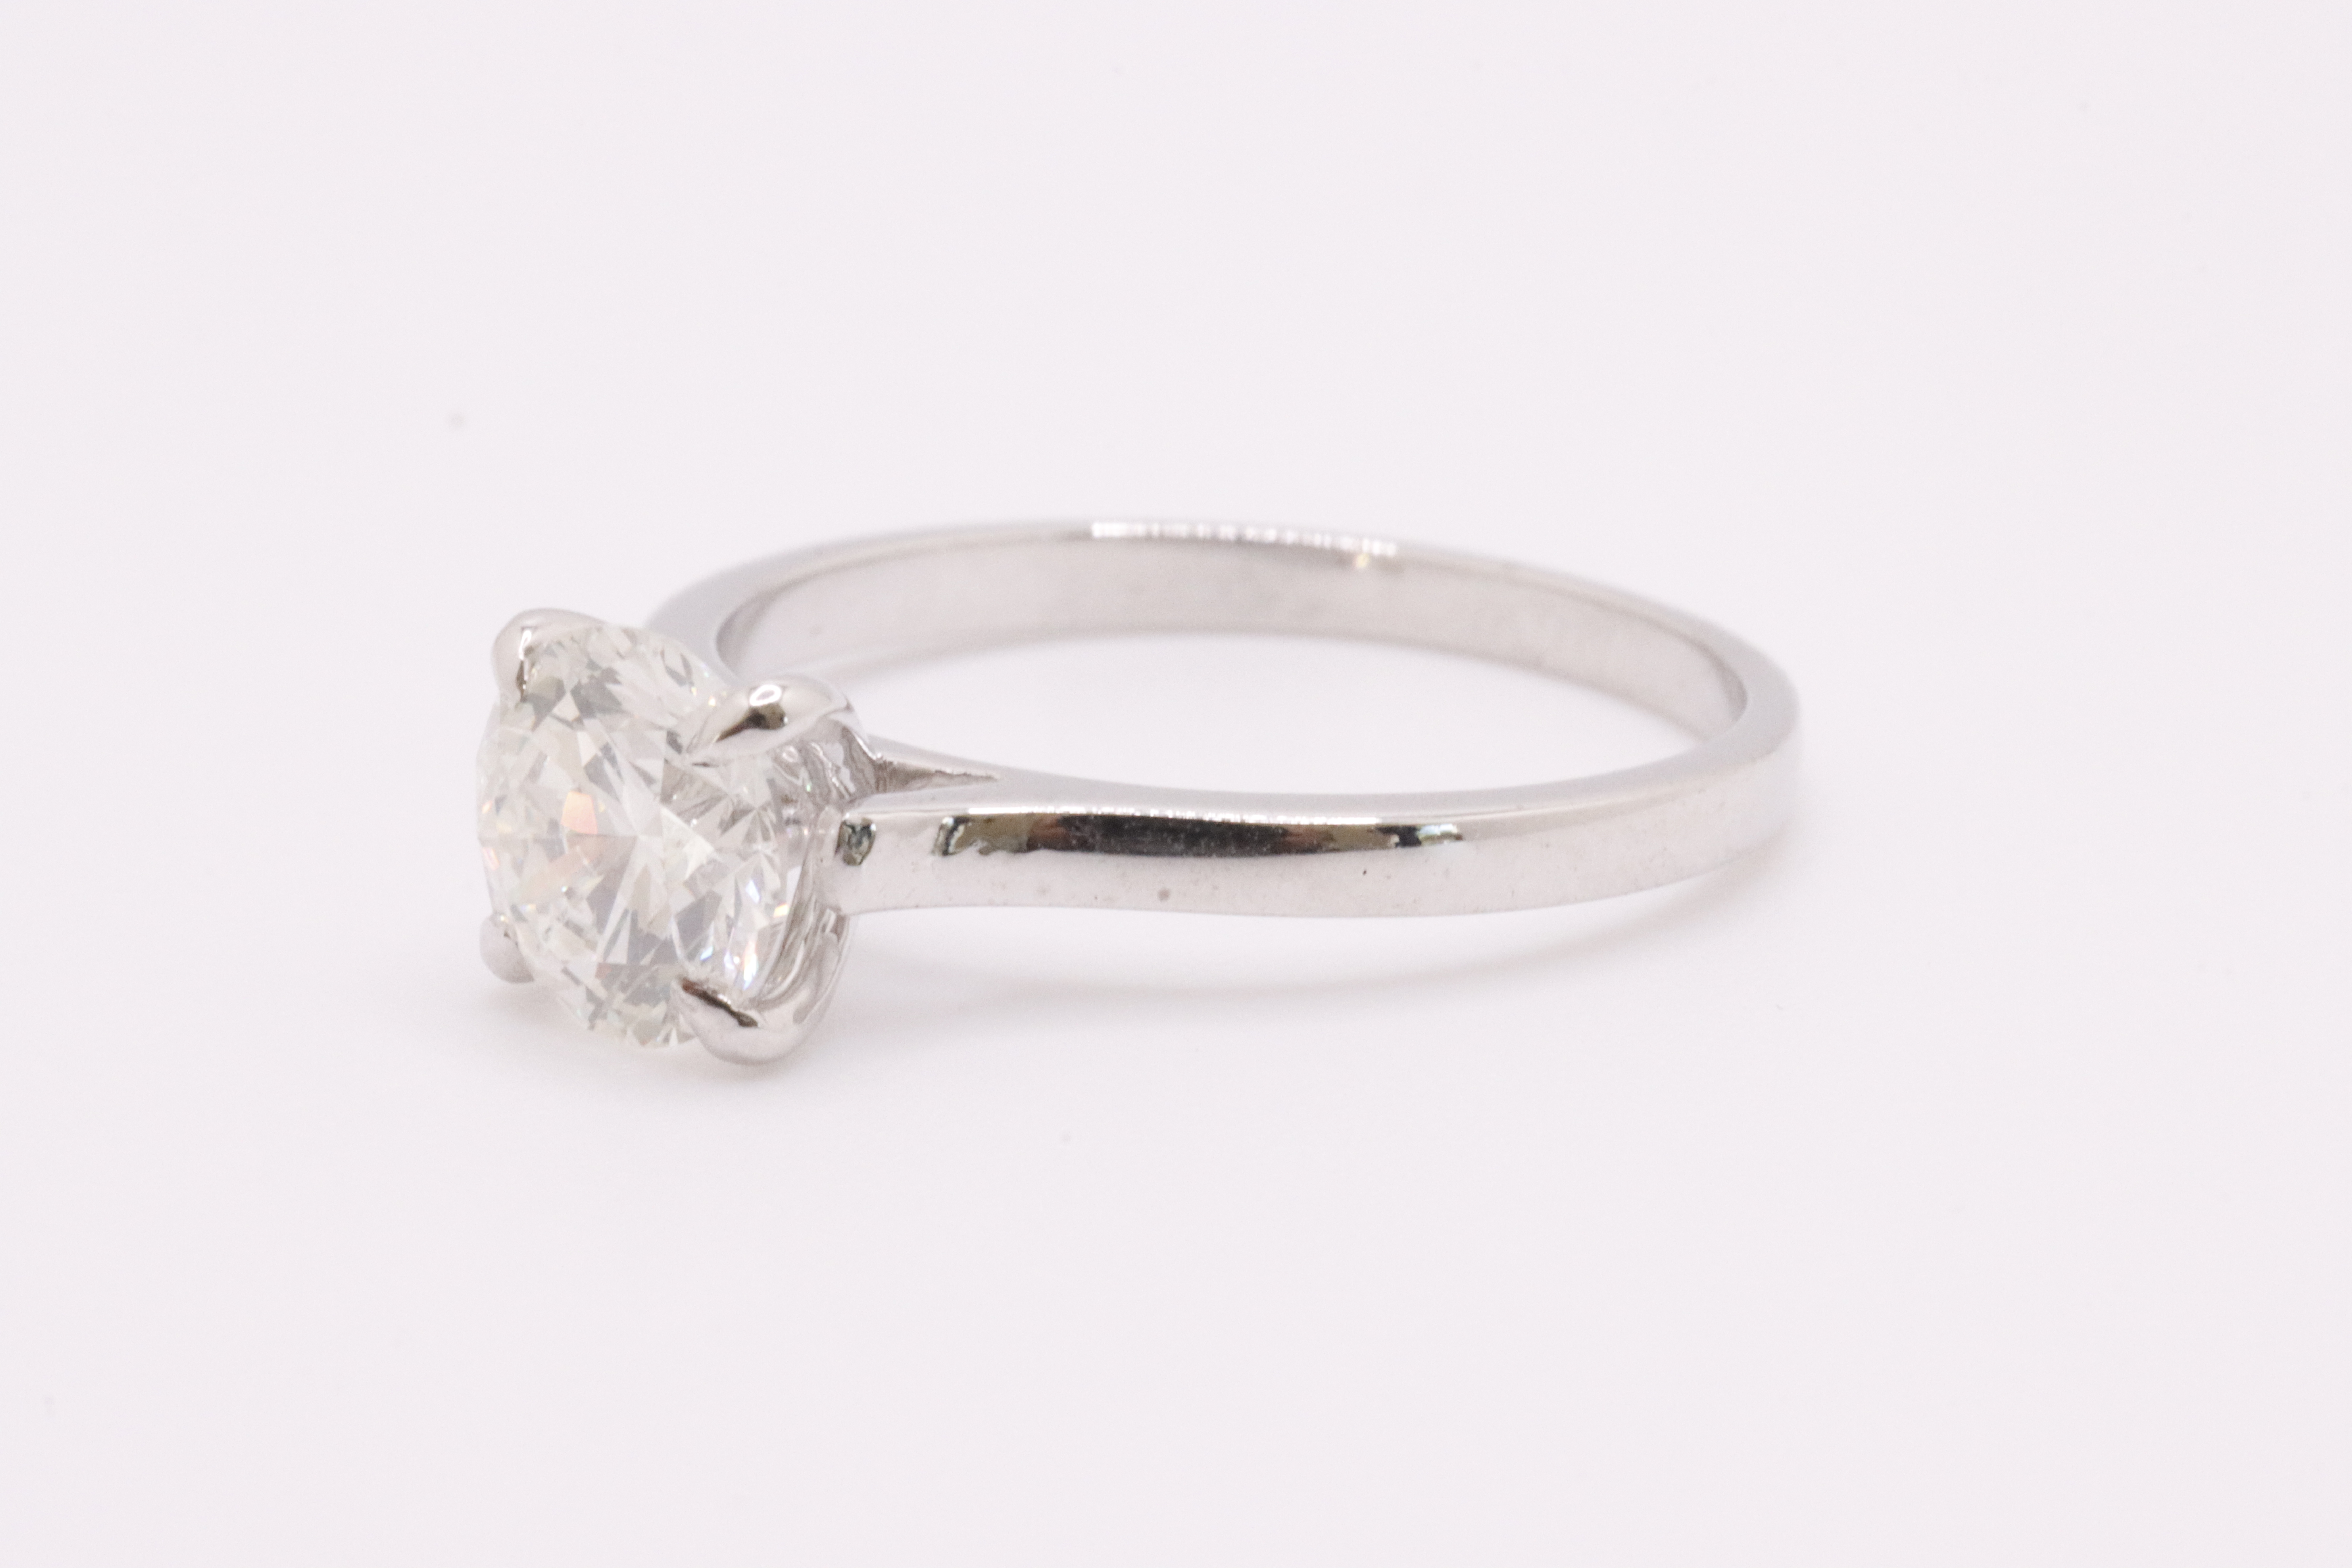 Round Brilliant Cut Natural Diamond Ring 1.09 Carat I Colour SI2 Clarity EX EX EX - GIA - Image 8 of 9